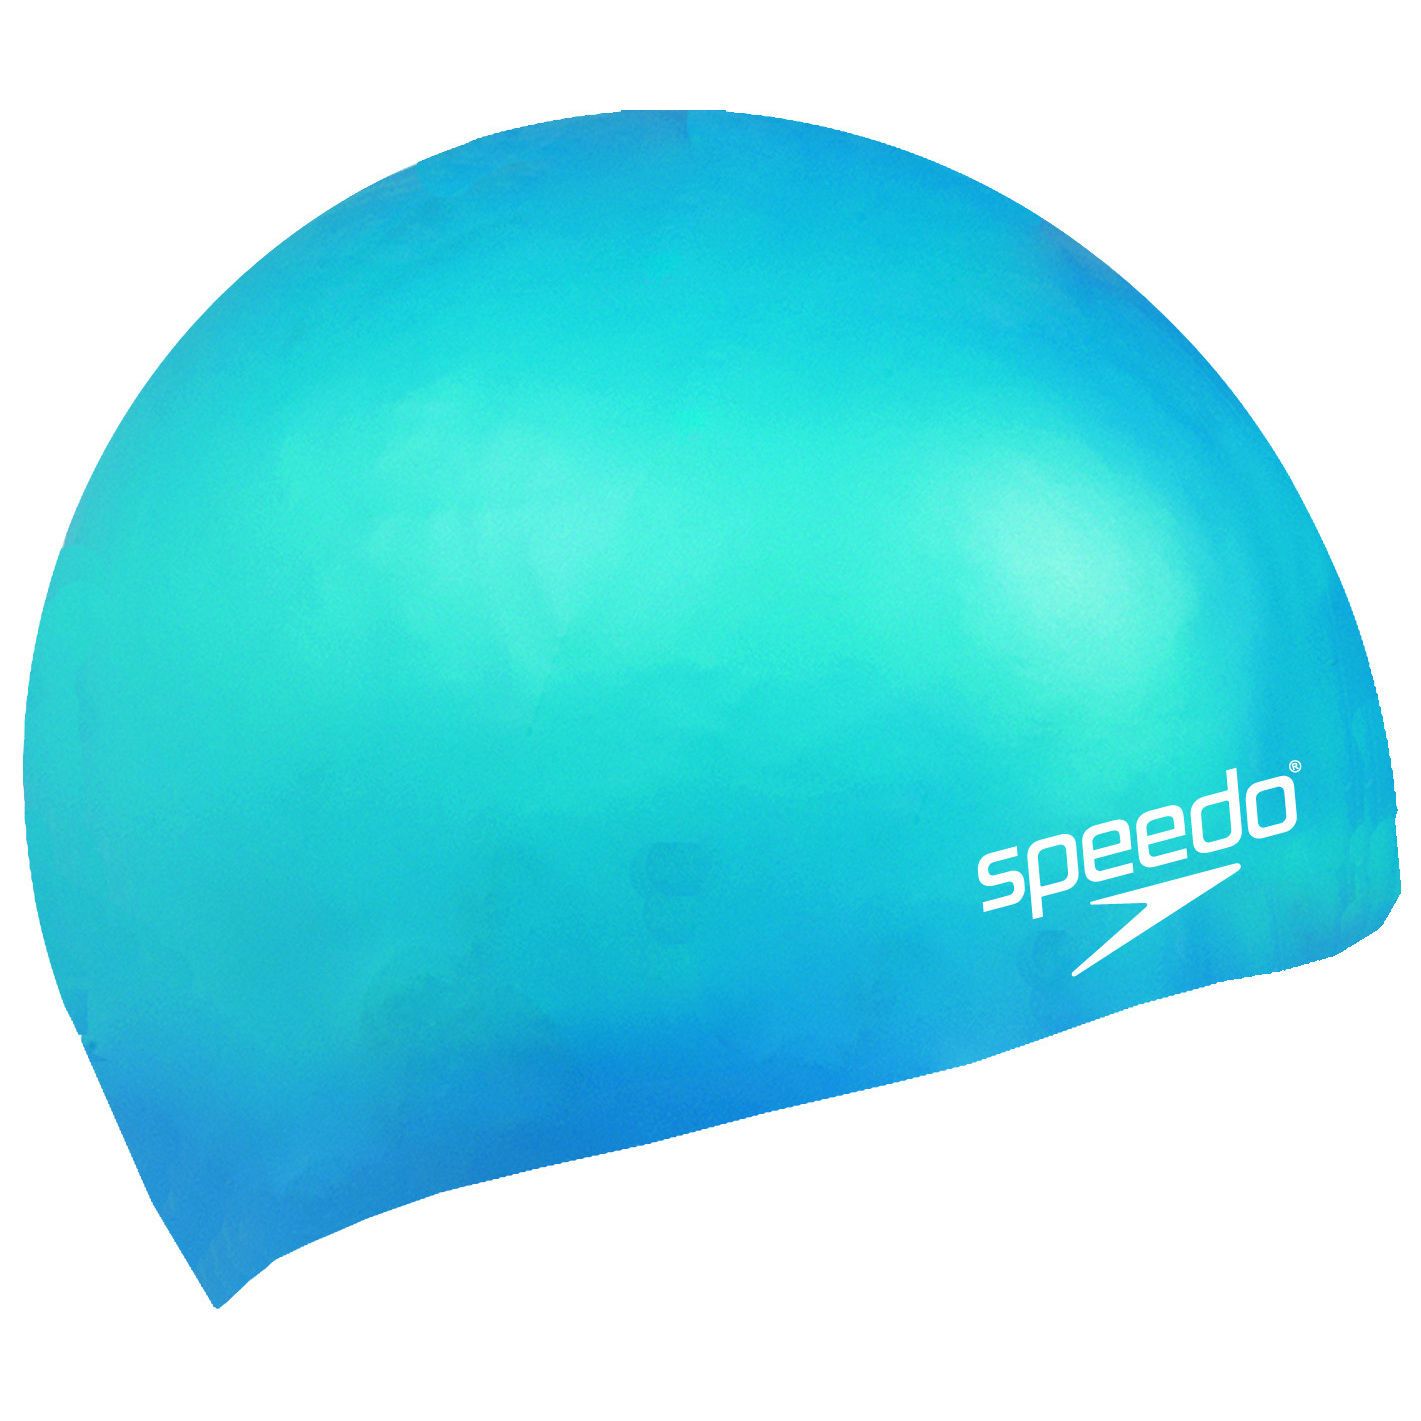  Speedo - Nón Bơi Trẻ Em Plain Moulded Silicone Junior (Xanh Biển) Chống Thấm Nước 